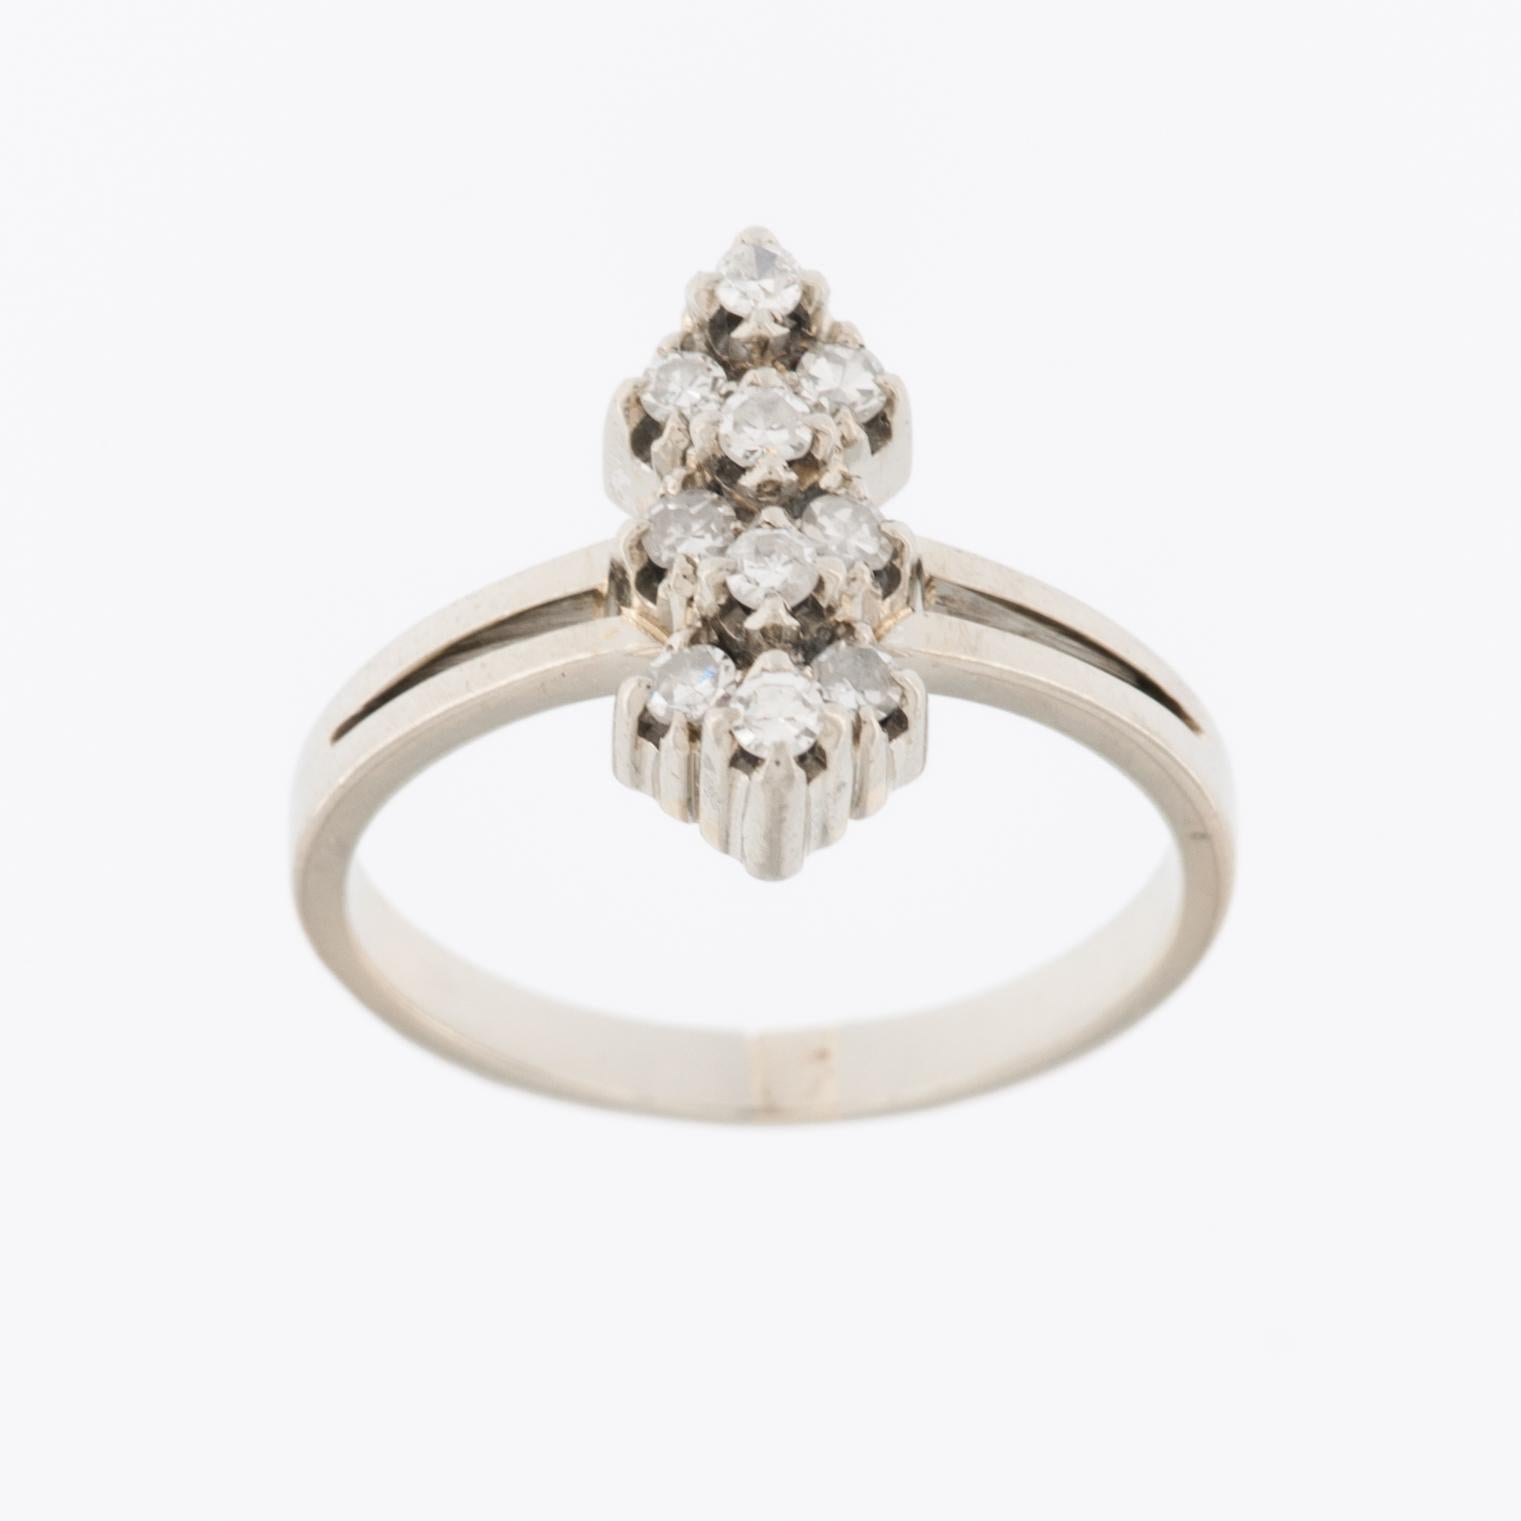 La bague Art déco en platine et diamants est un bijou éblouissant et intemporel qui incarne l'esthétique de l'époque Art déco, qui a connu son apogée dans les années 1920 et 1930. 

La bague est en platine, un métal précieux connu pour sa durabilité